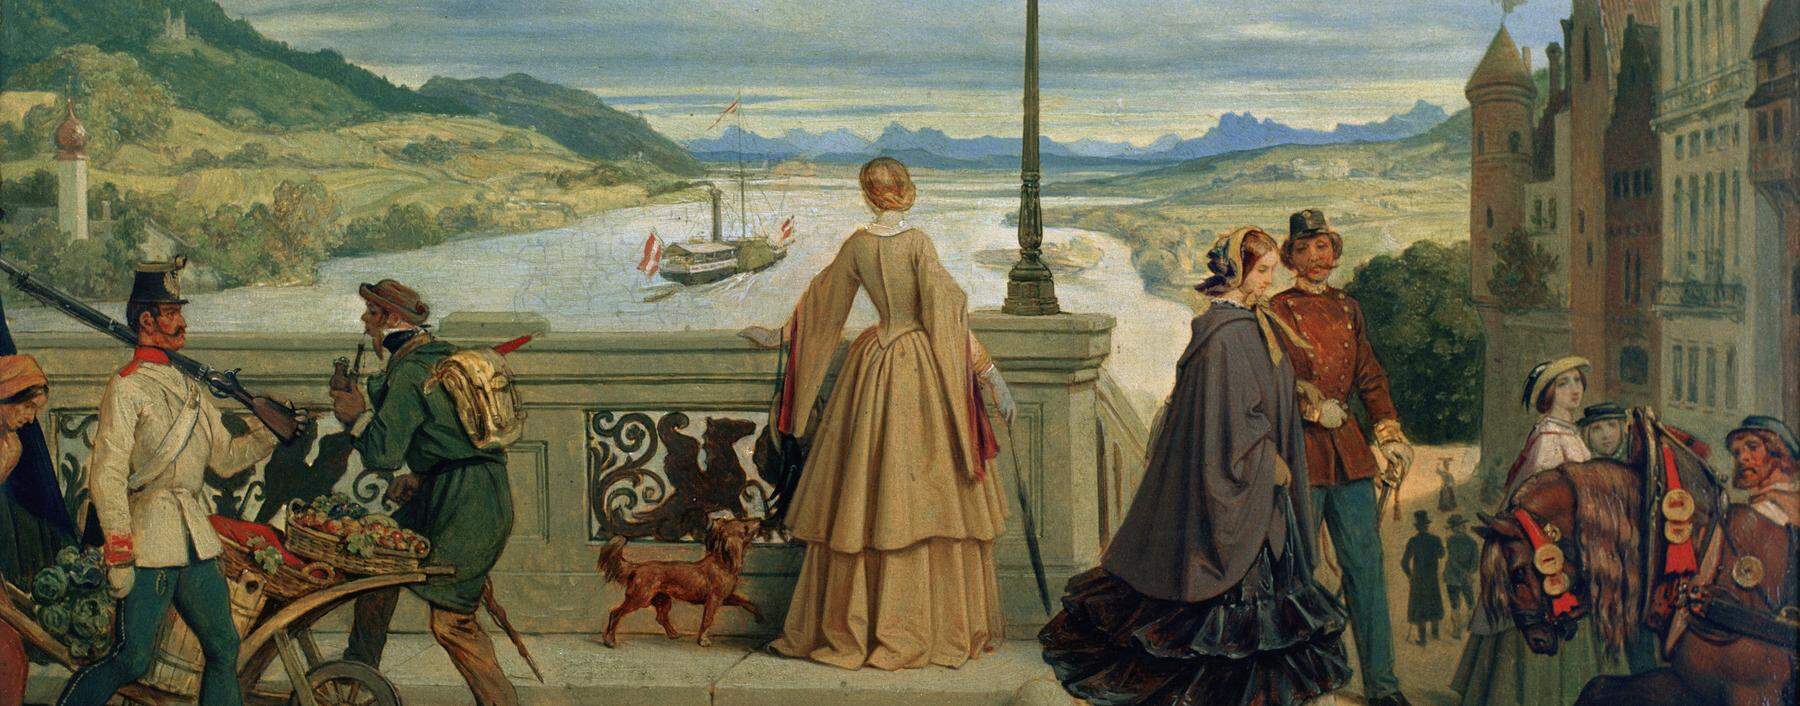 Linz warf nach 1850 das biedermeierliche Gewand ab und öffnete sich. Der Maler Moritz Schwind zeigt Passanten auf der Donaubrücke von Linz um das Jahr 1860.